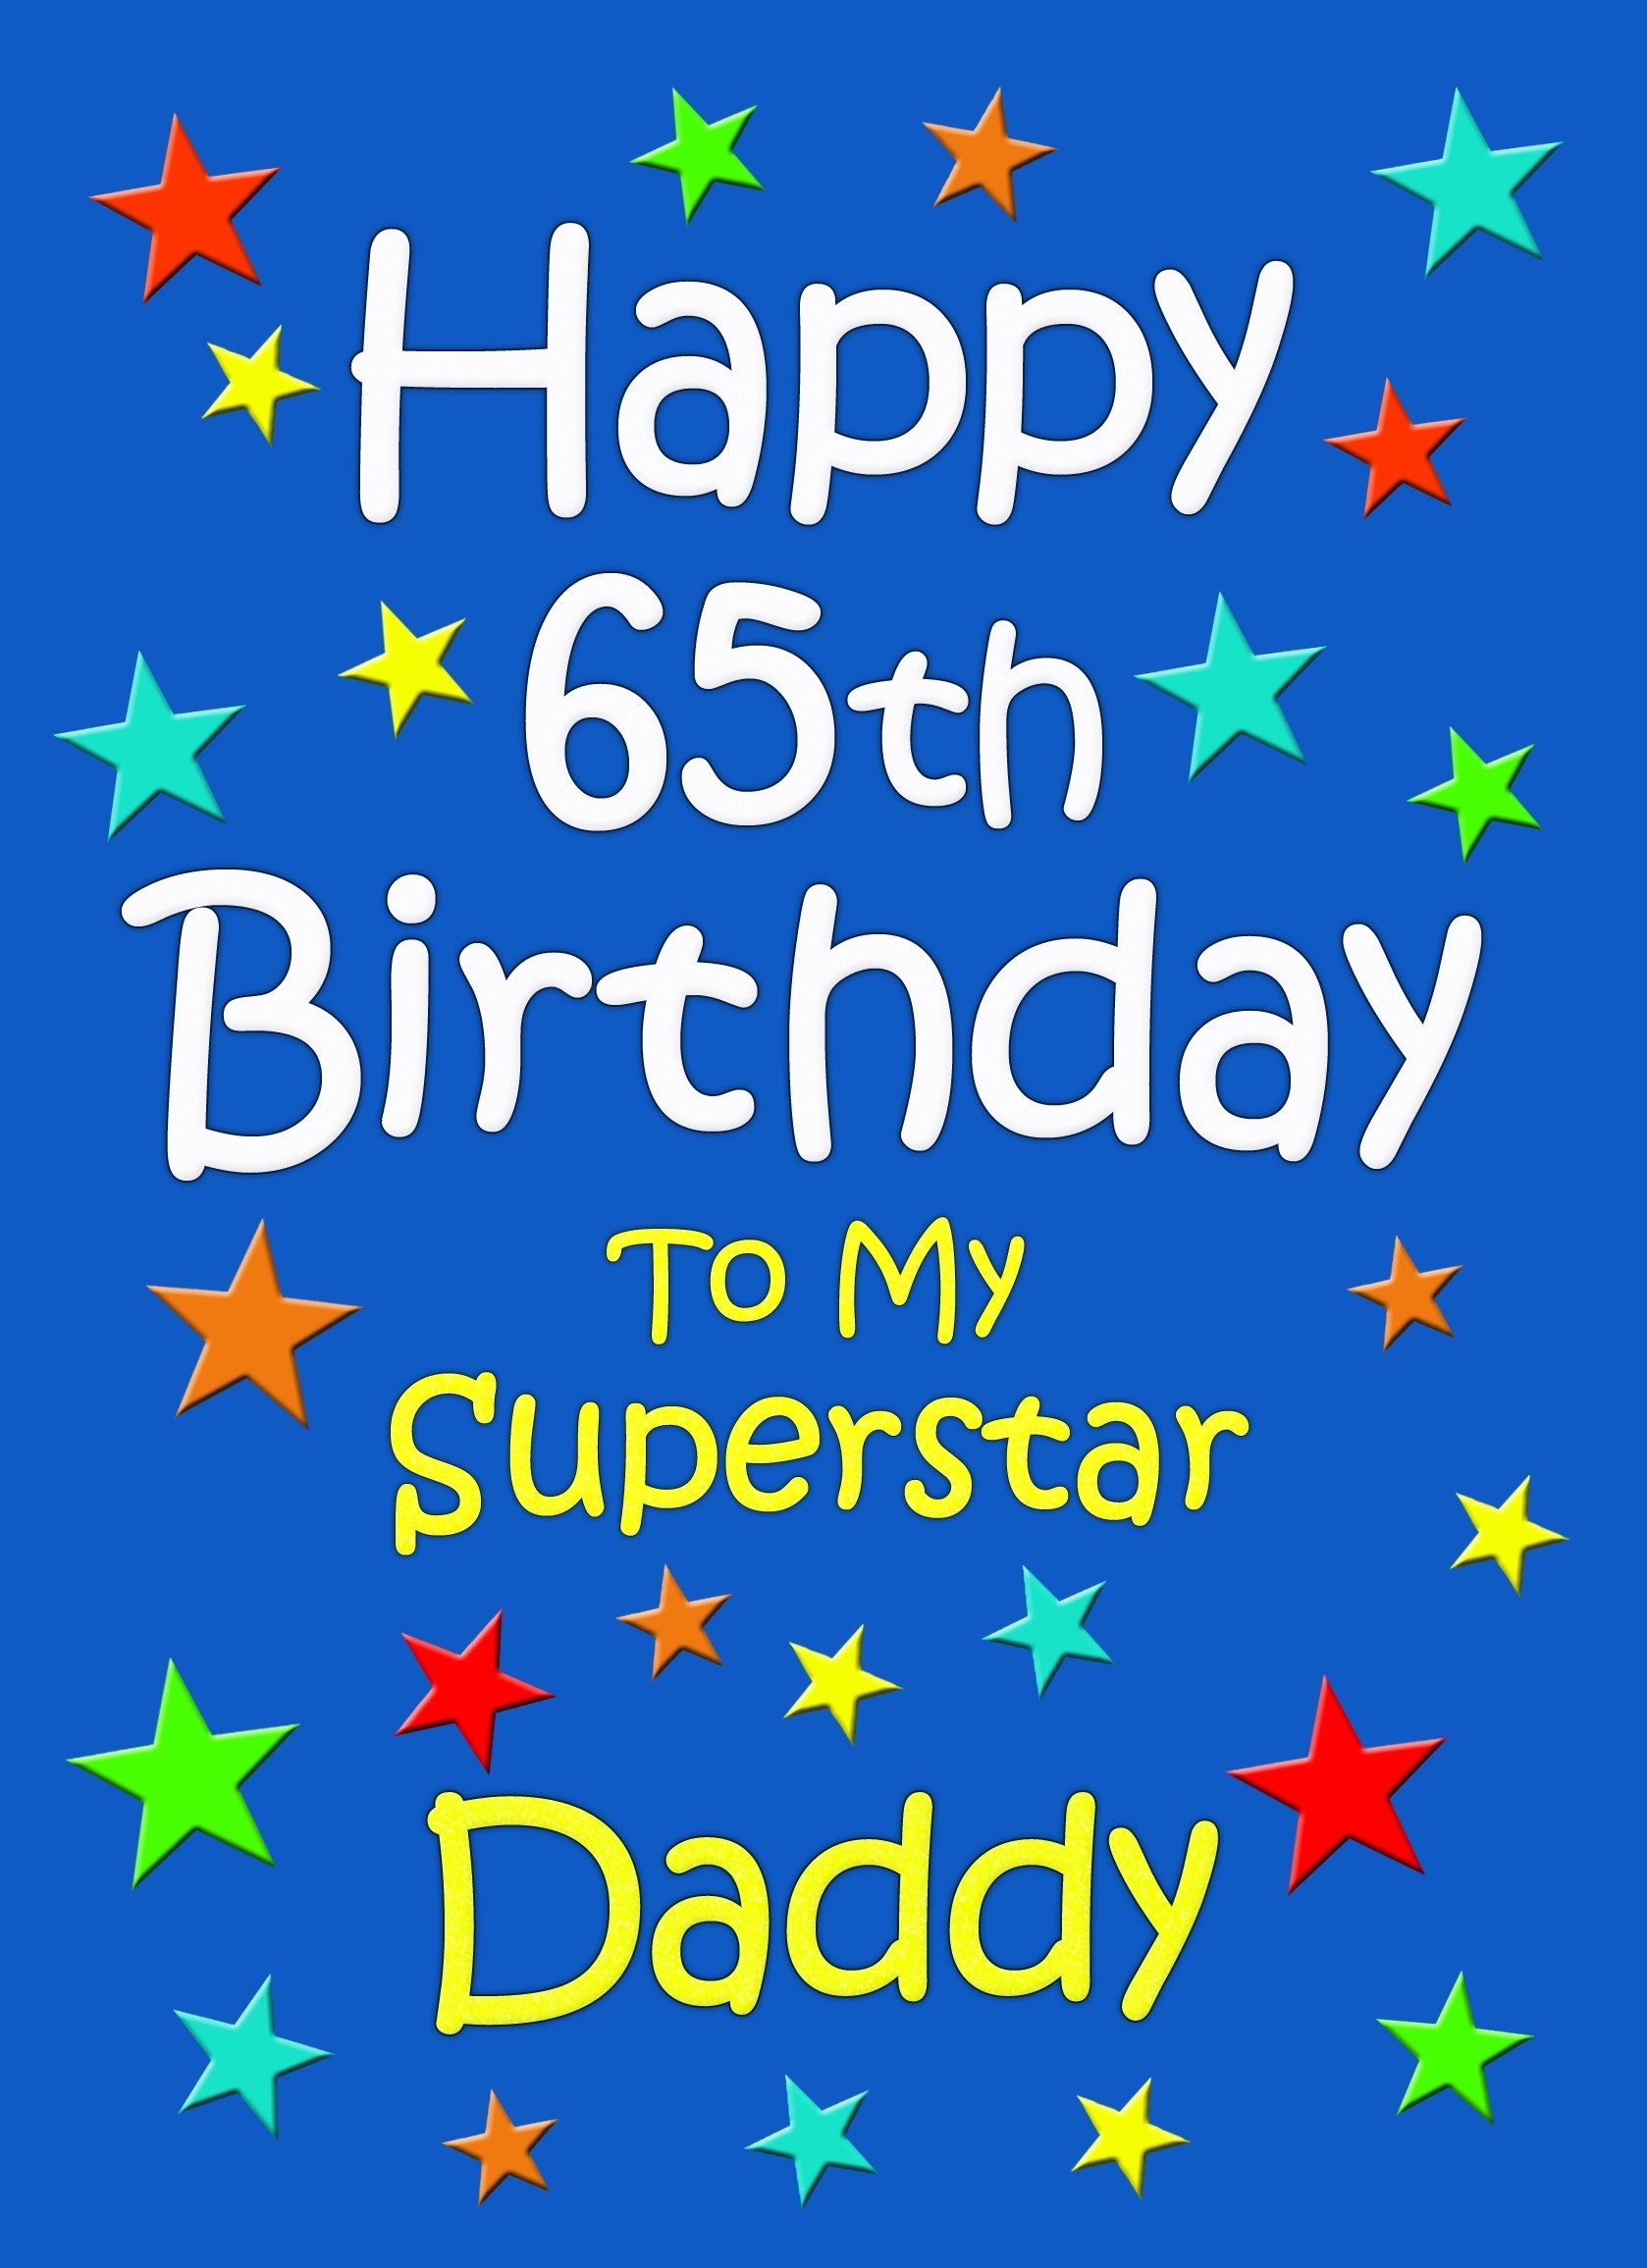 Daddy 65th Birthday Card (Blue)